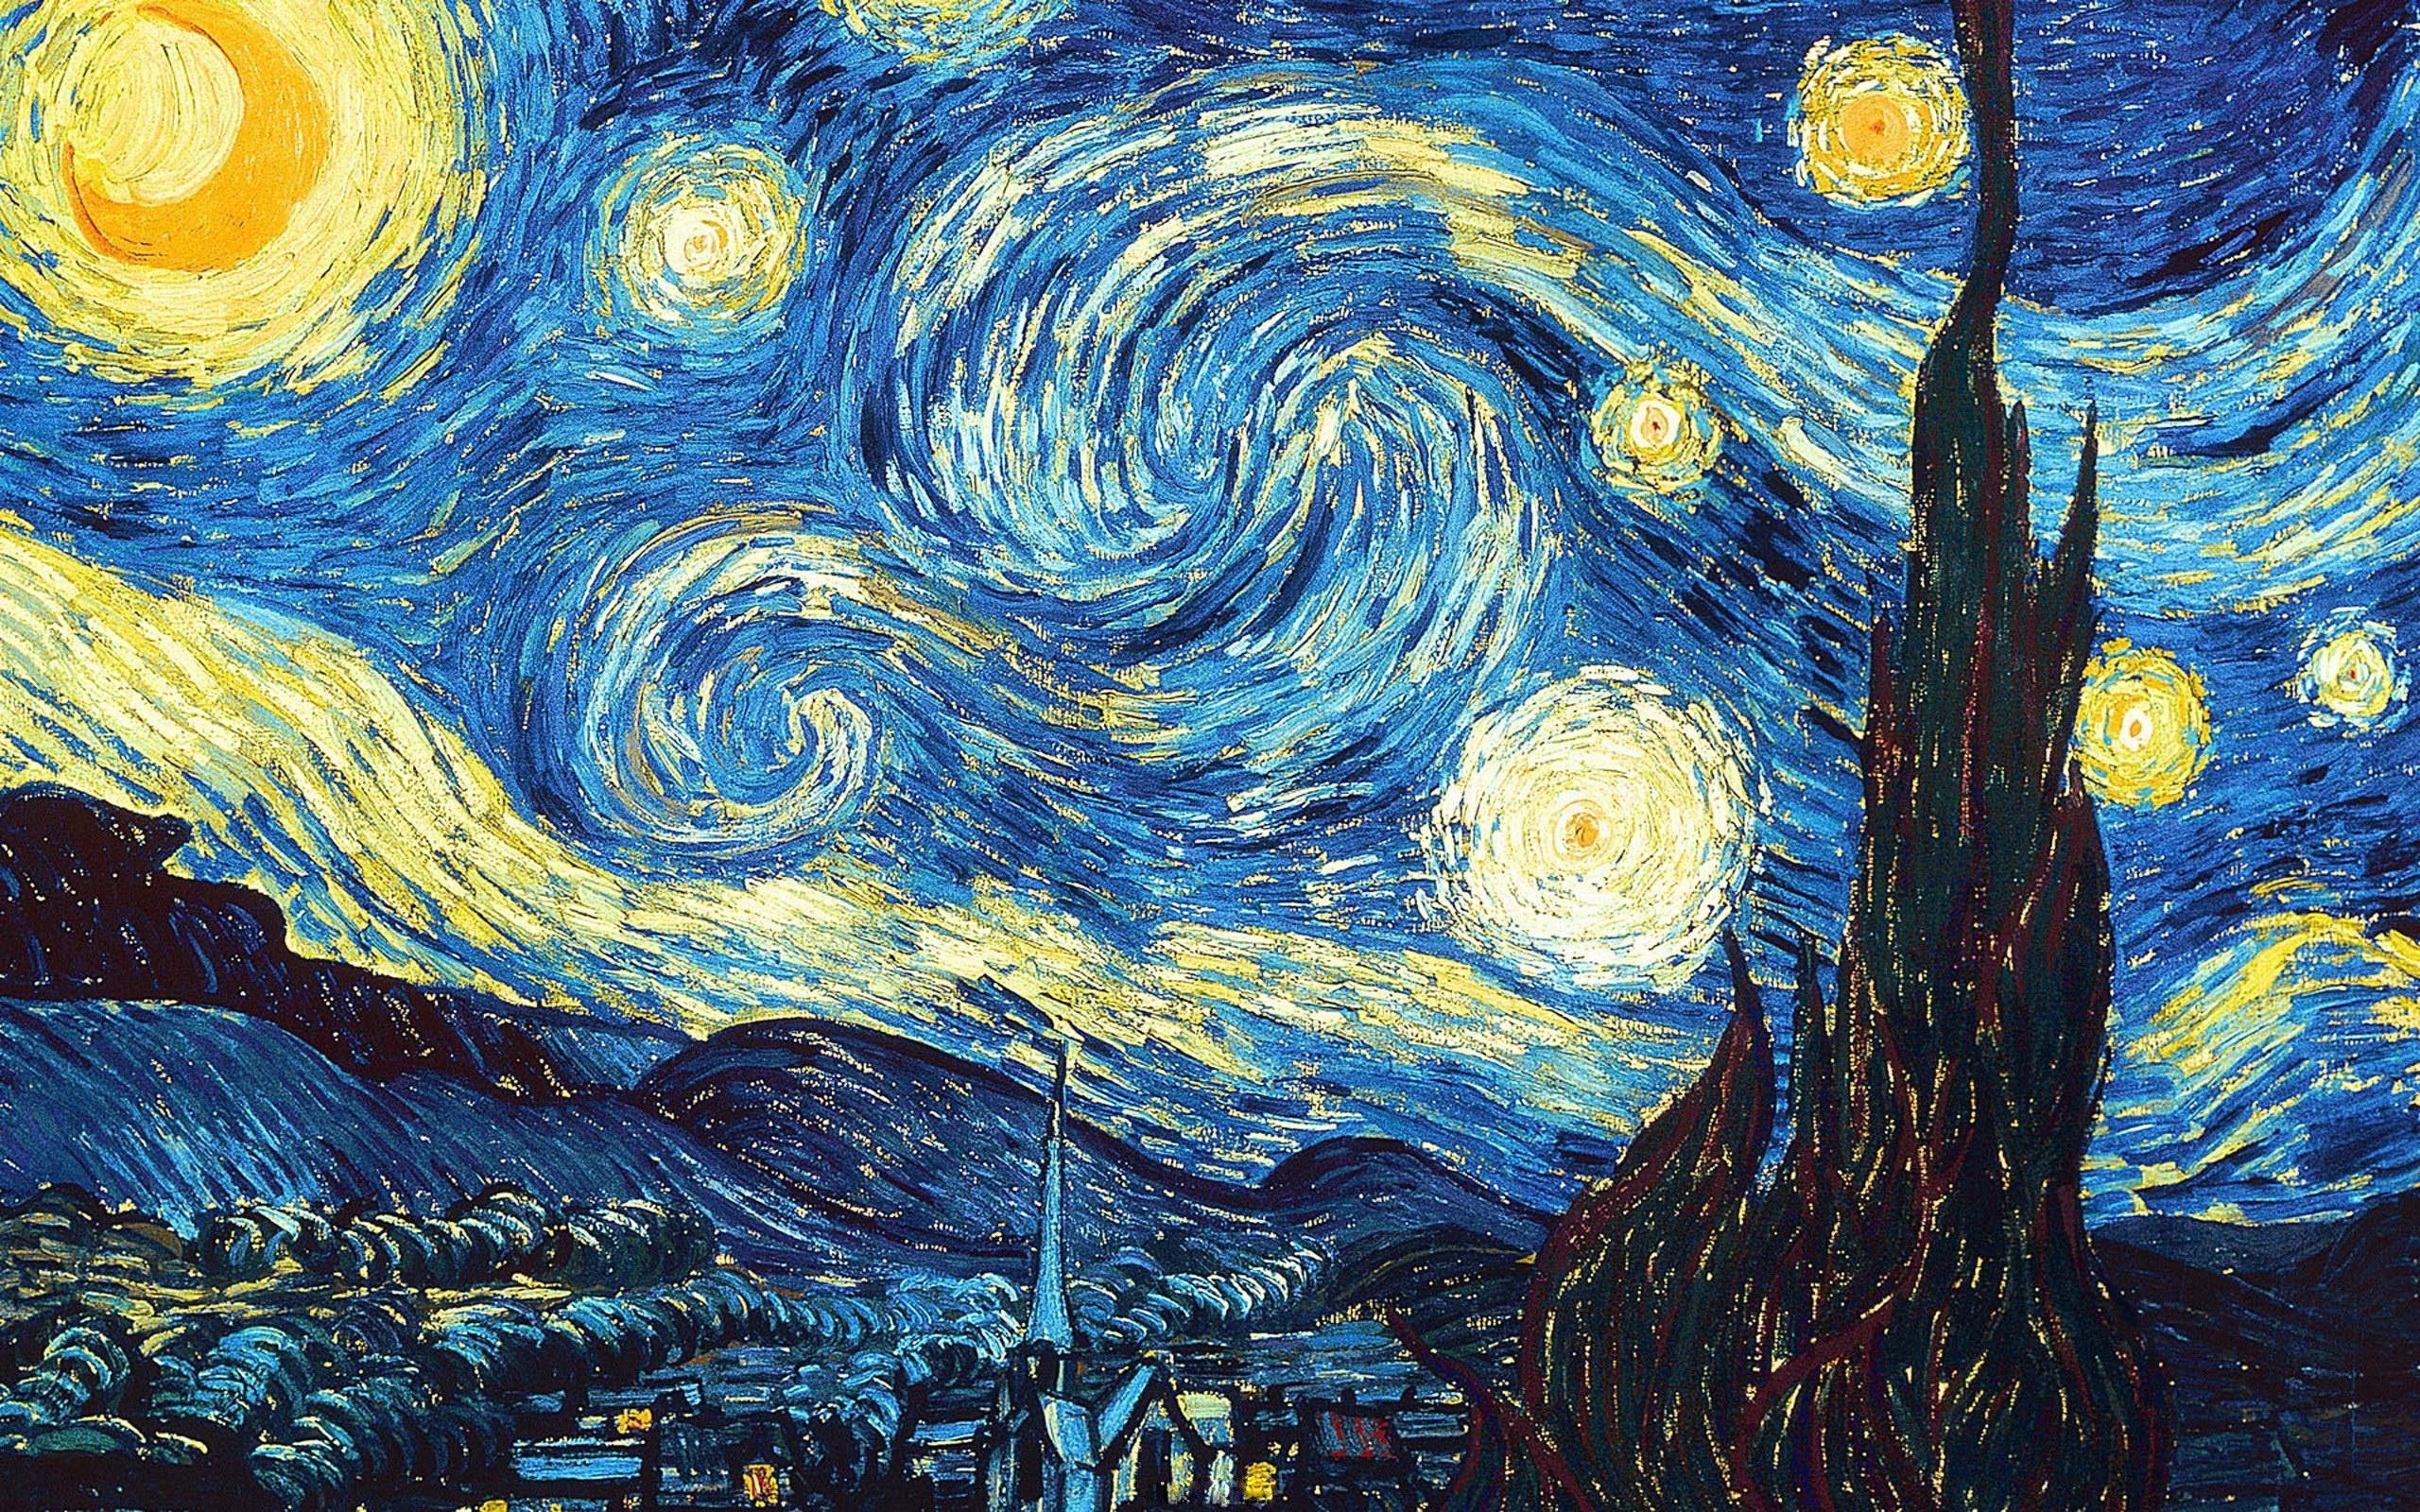 Fondos de Van Gogh - Los mejores fondos de Van Gogh gratis - WallpaperAccess